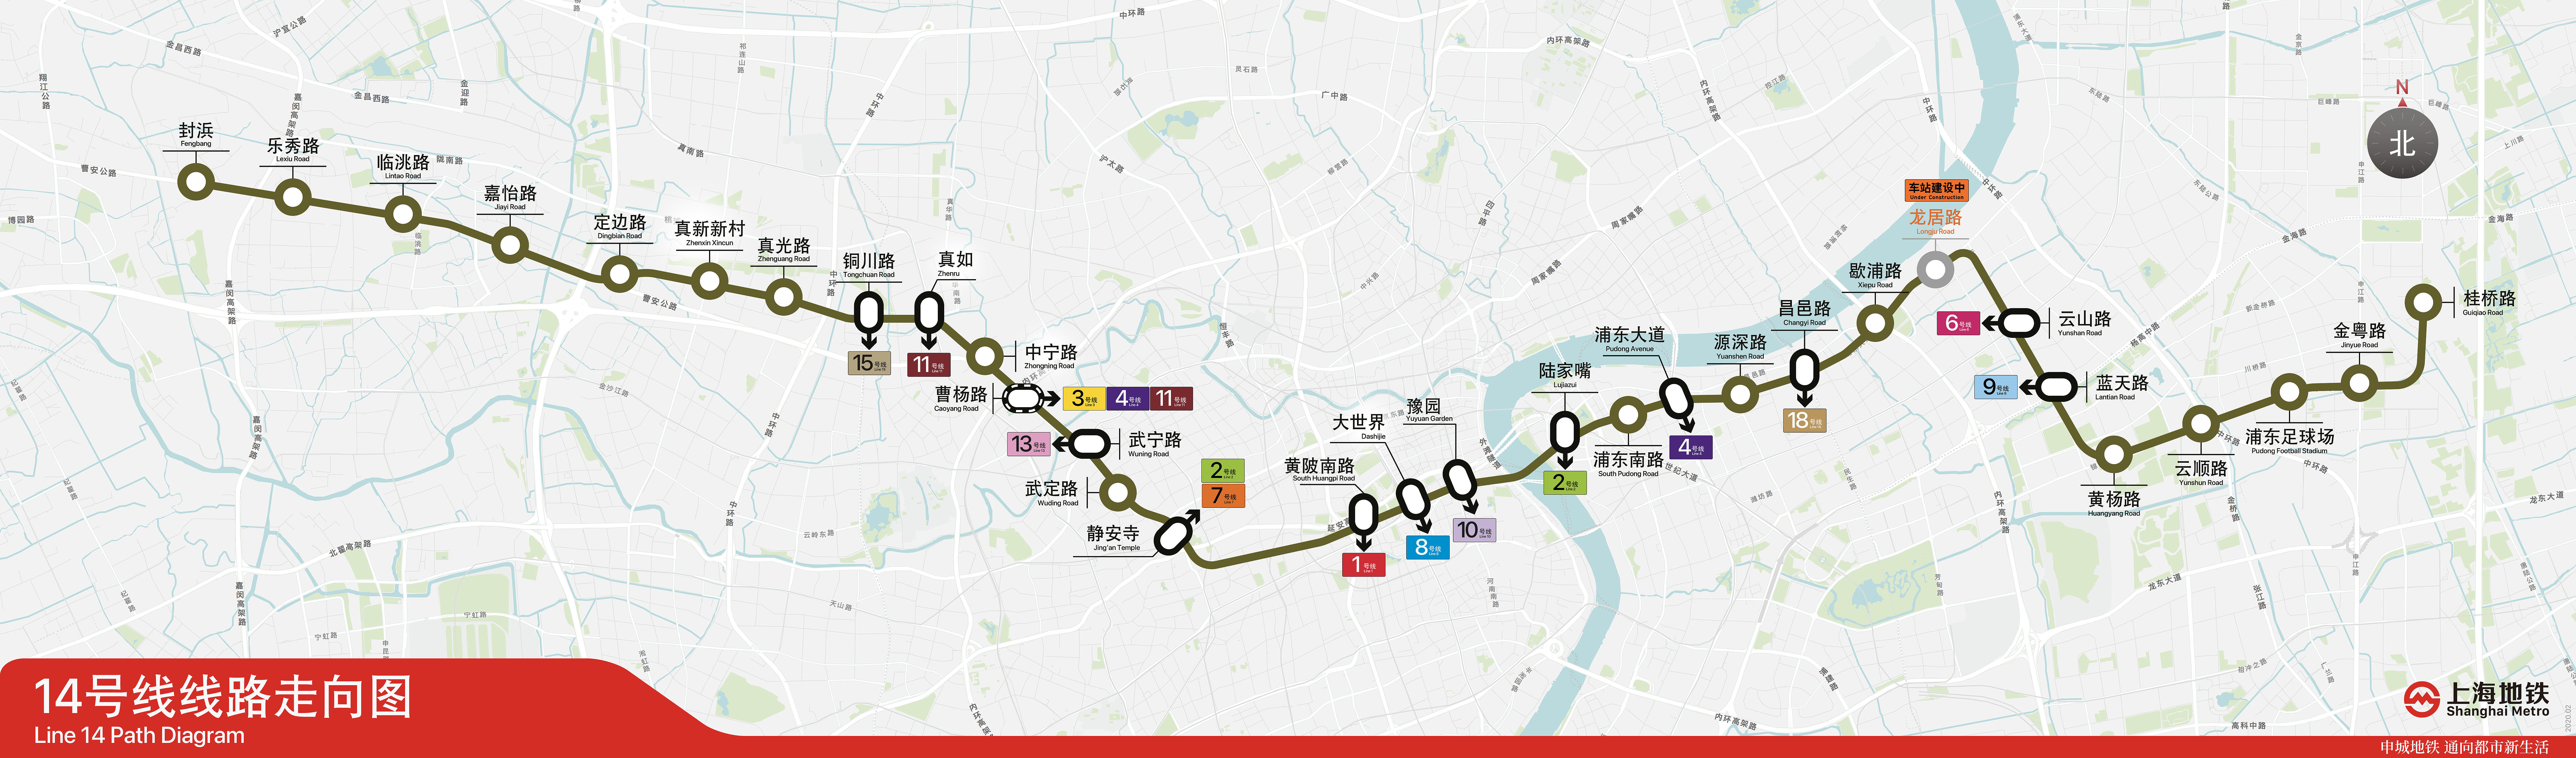 上海地铁14号线线路走向图